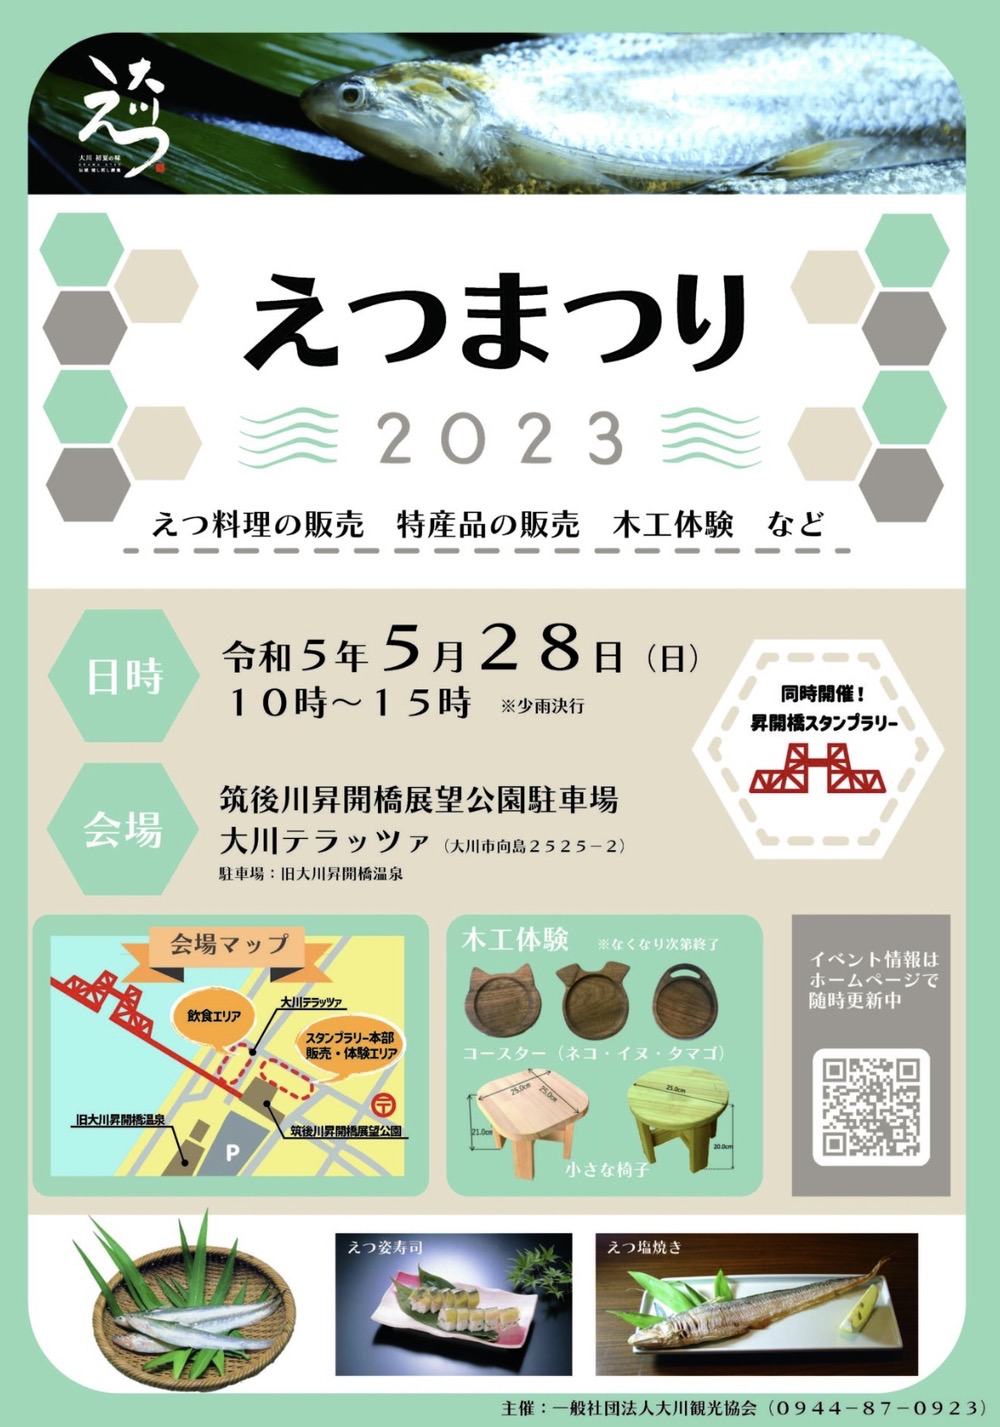 大川市「えつまつり2023」えつ料理の販売、特産品の販売、木工体験など開催！